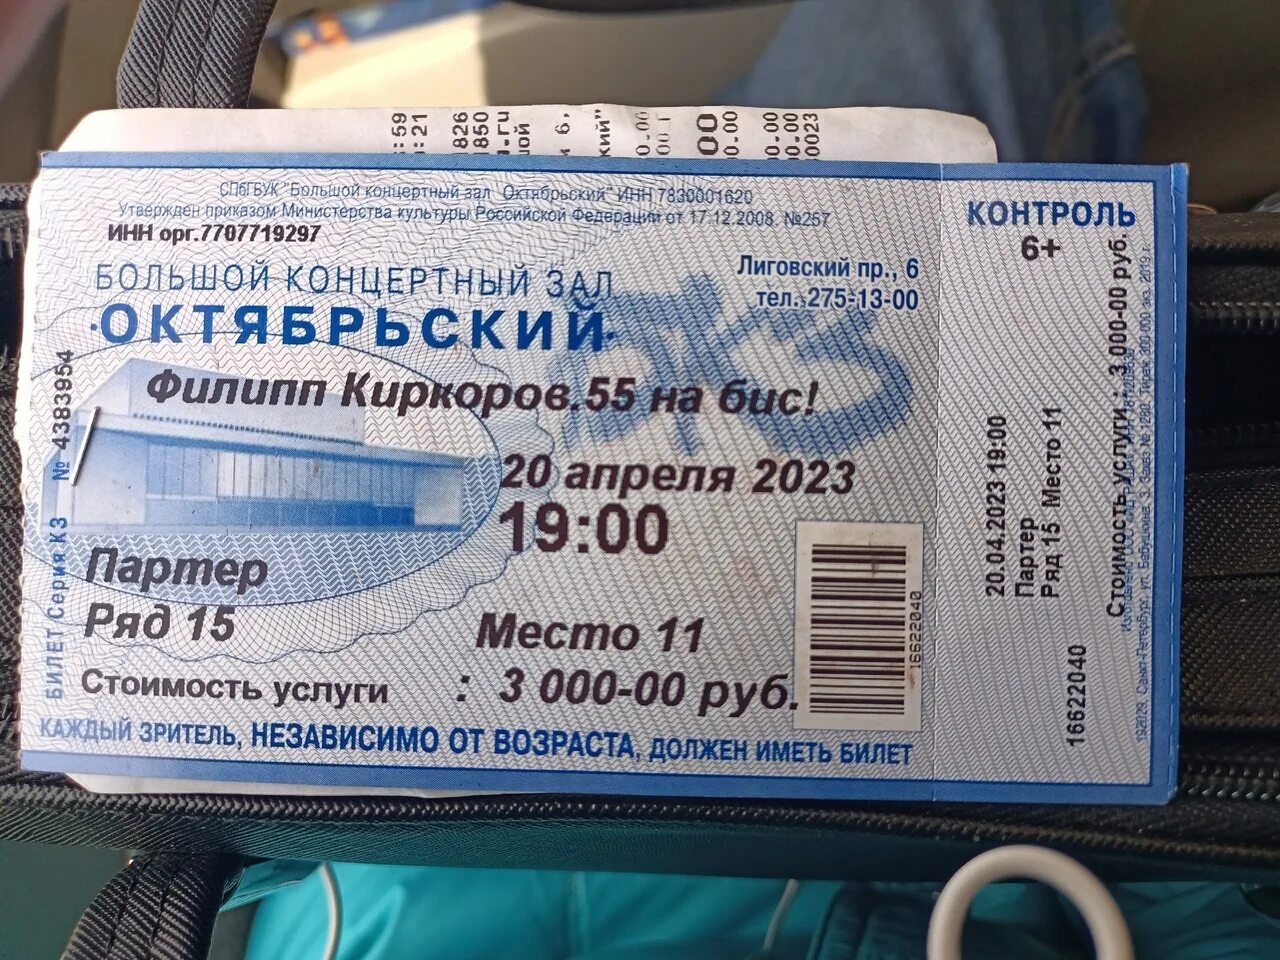 Сам билеты продаю. Билет в космос. Билеты проданы. Концерт Киркоров билеты 2023 СПБ. Продам билетики Донецк 2014.